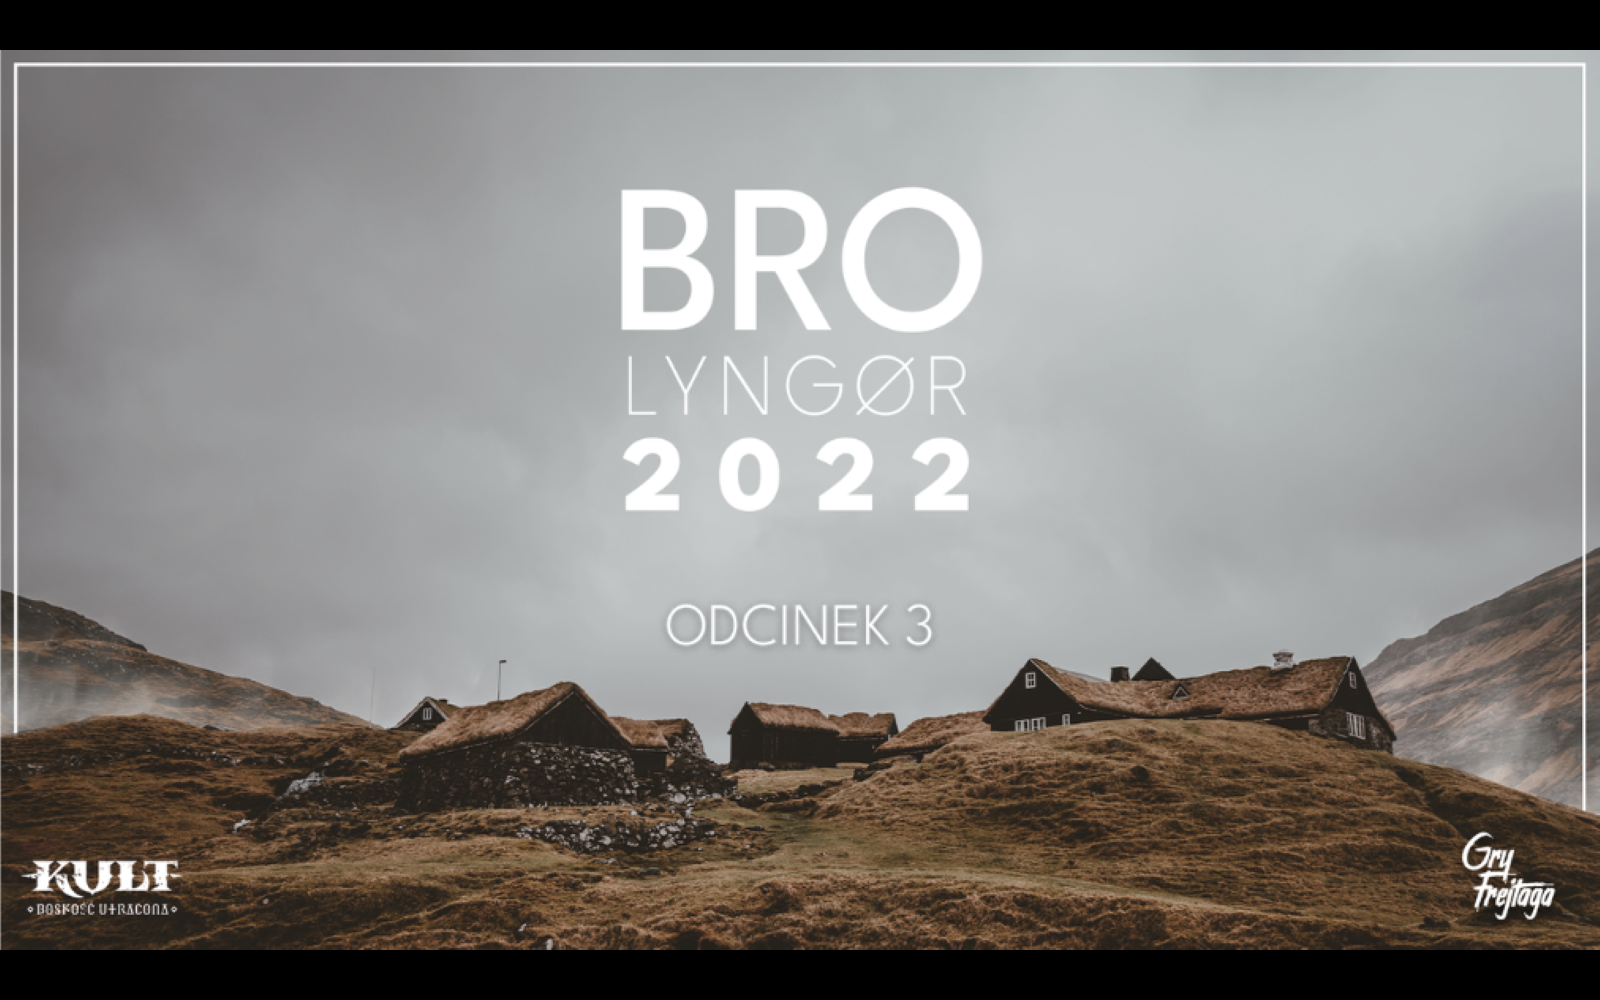 BRO Lyngør 2022: w tle napisu widok wioski na jałowej wysepce